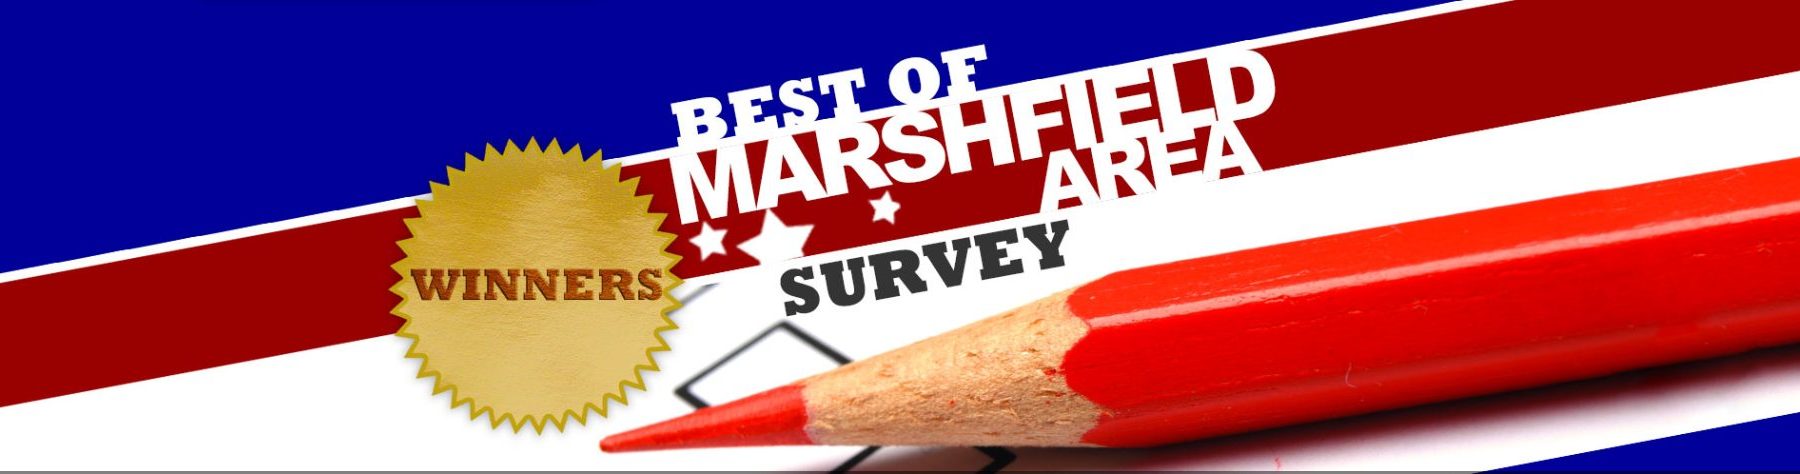 Article: Best of Marshfield 2020 Winners